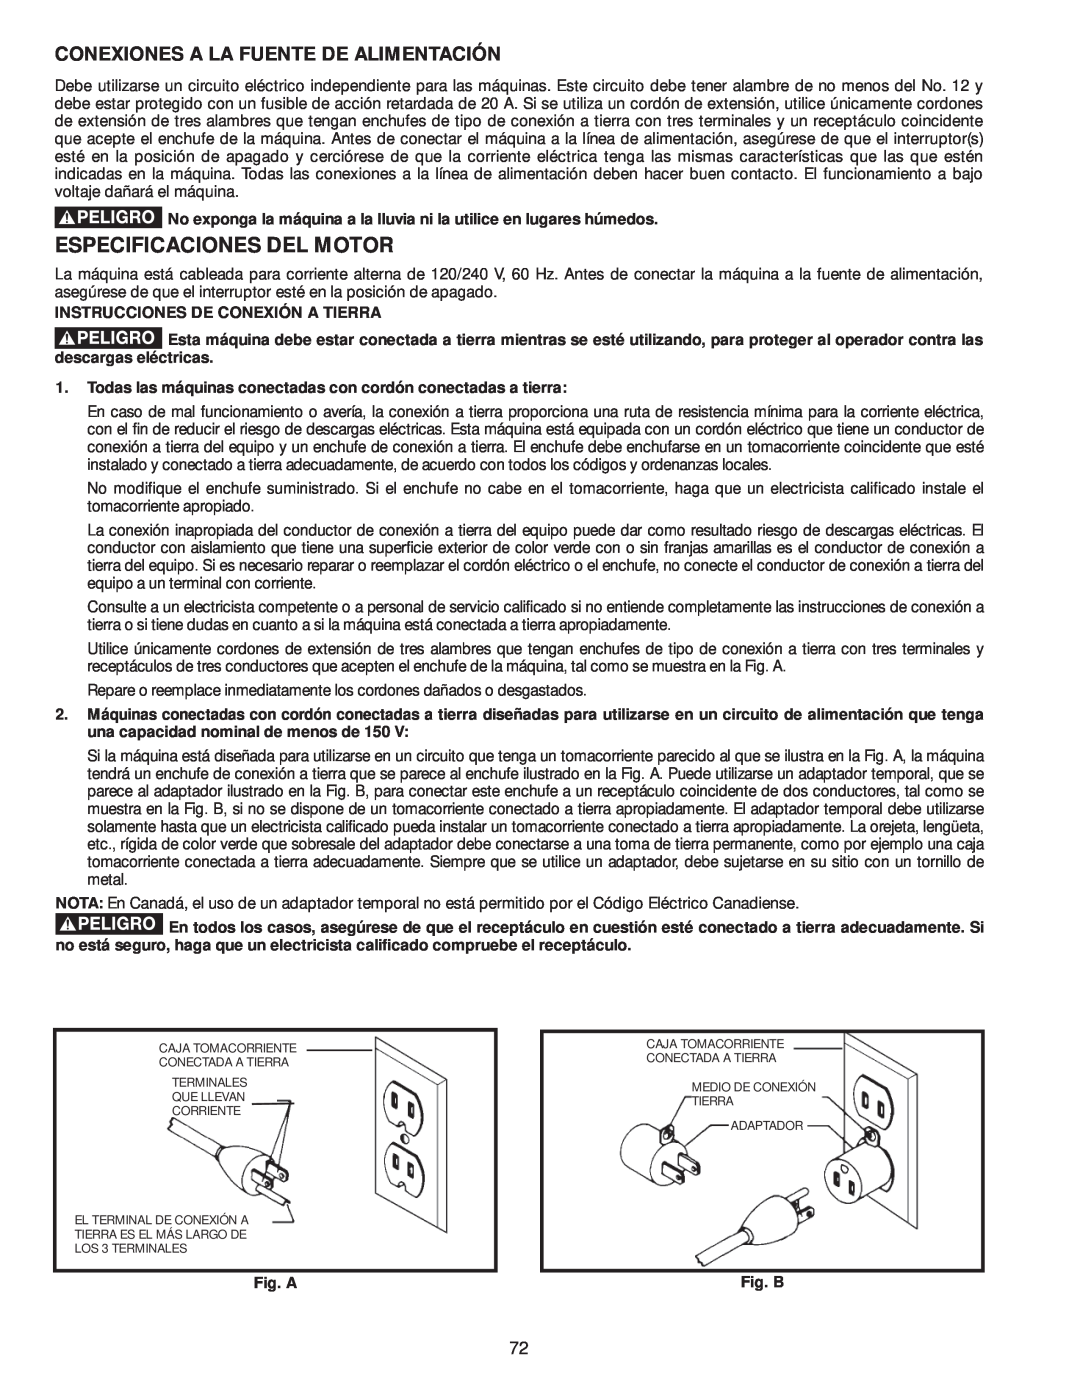 Delta 36-979, 36-978 instruction manual Especificaciones Del Motor, Conexiones A La Fuente De Alimentación 